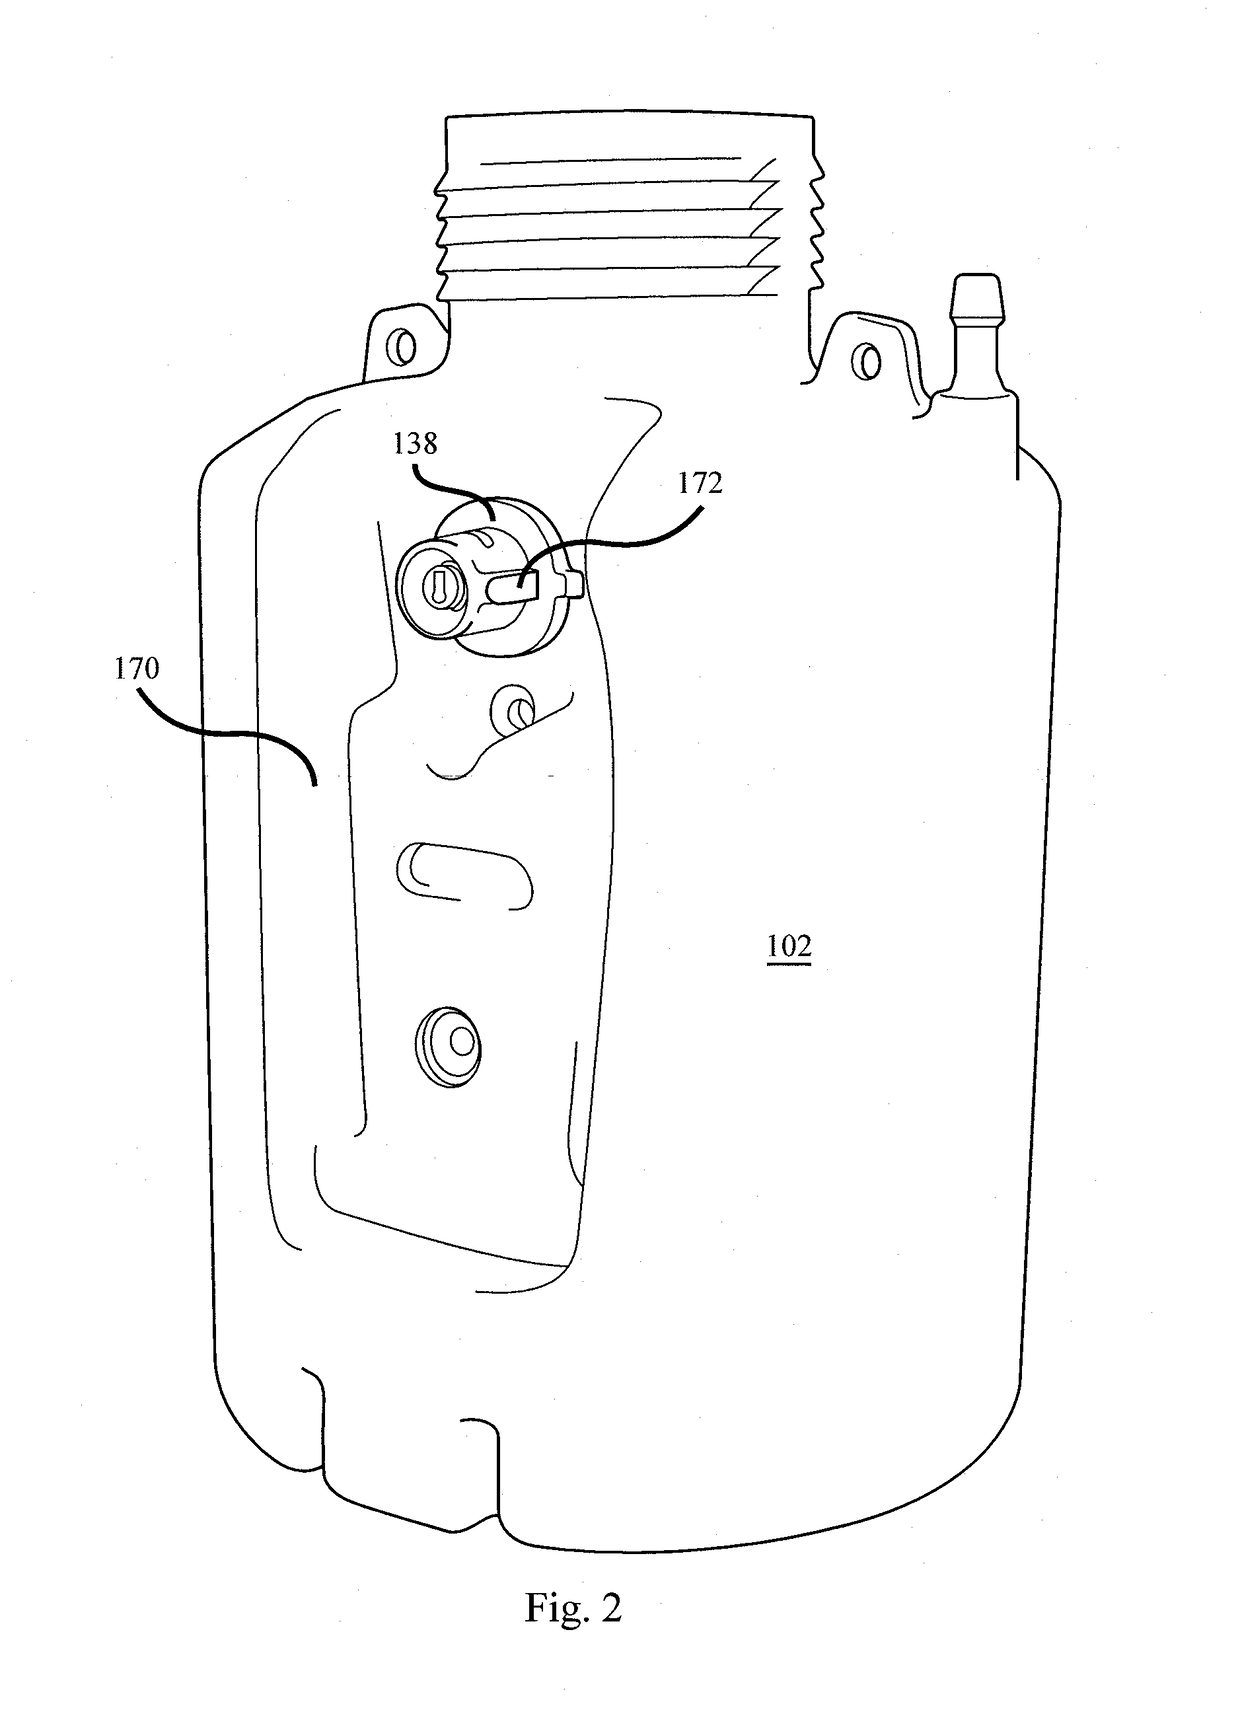 Portable pressurized sprayer